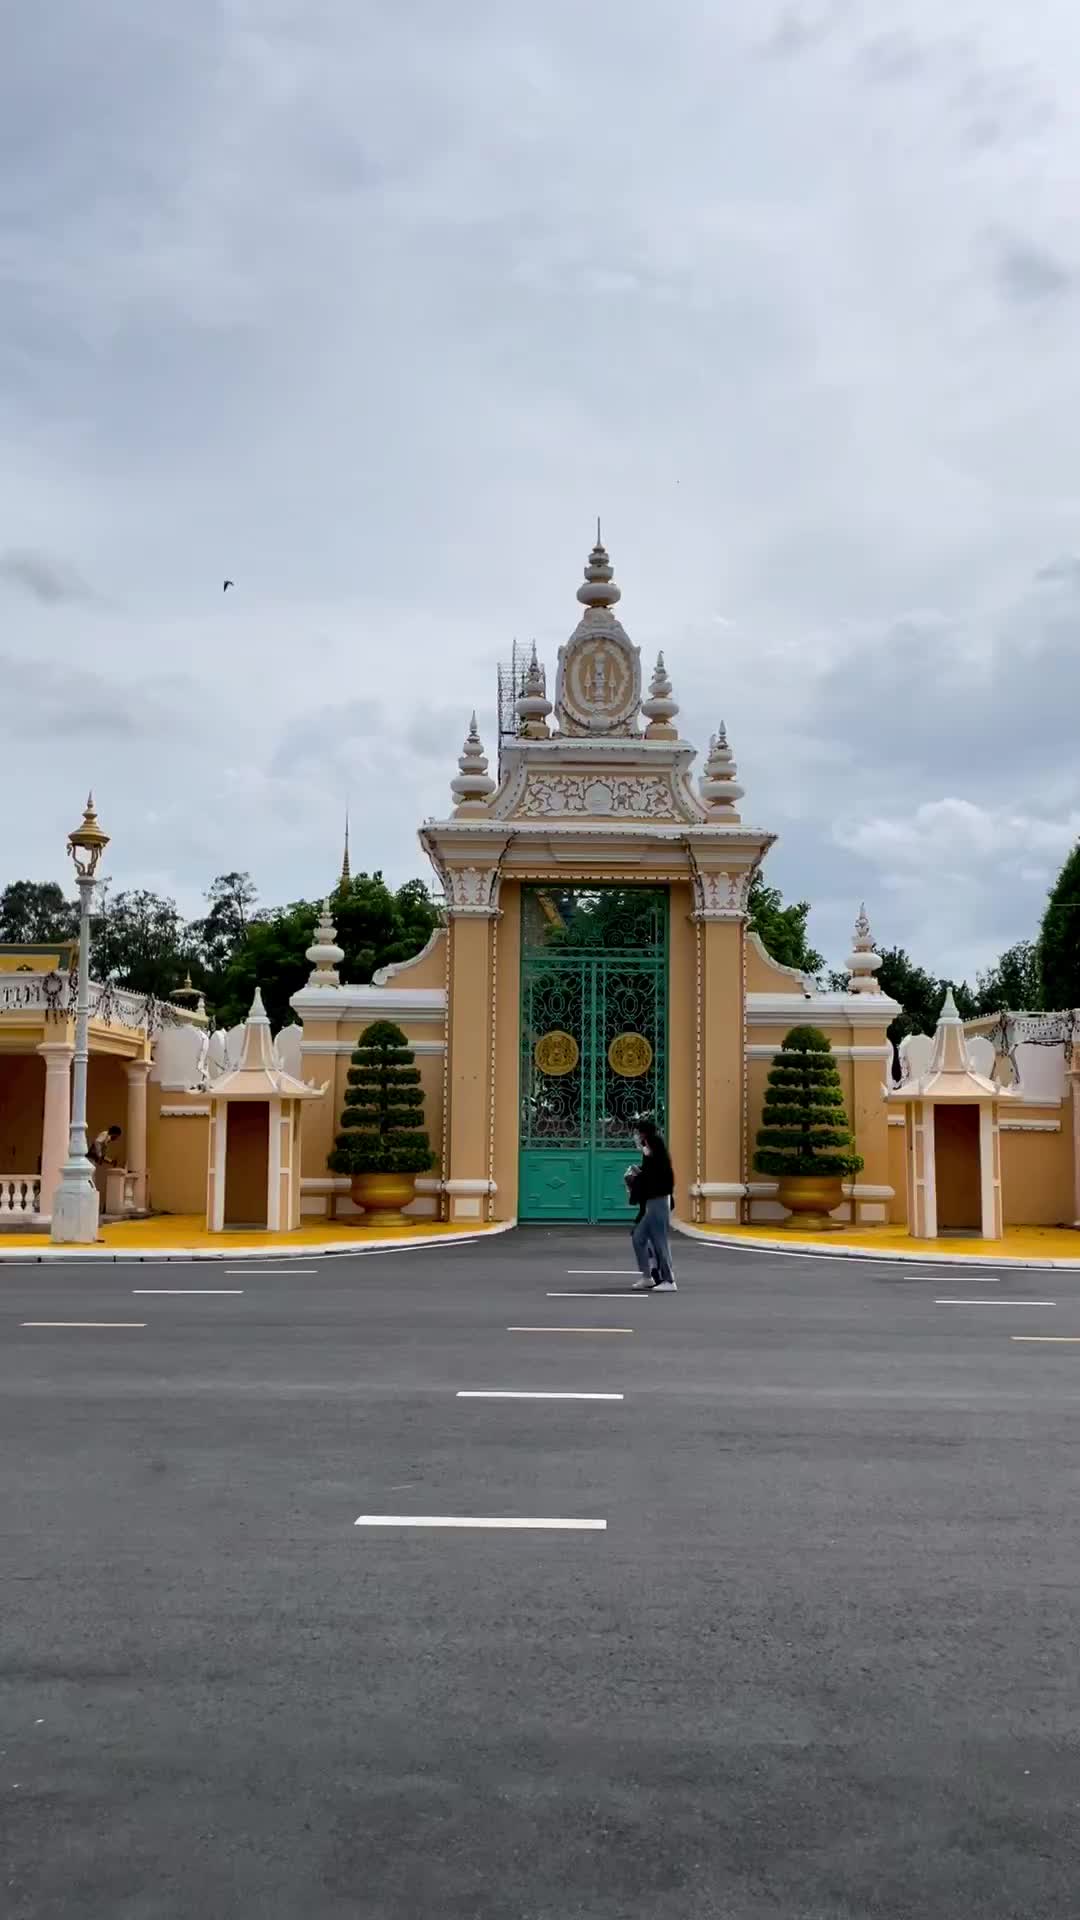 Royal Palace of Cambodia - History & Beauty in Phnom Penh